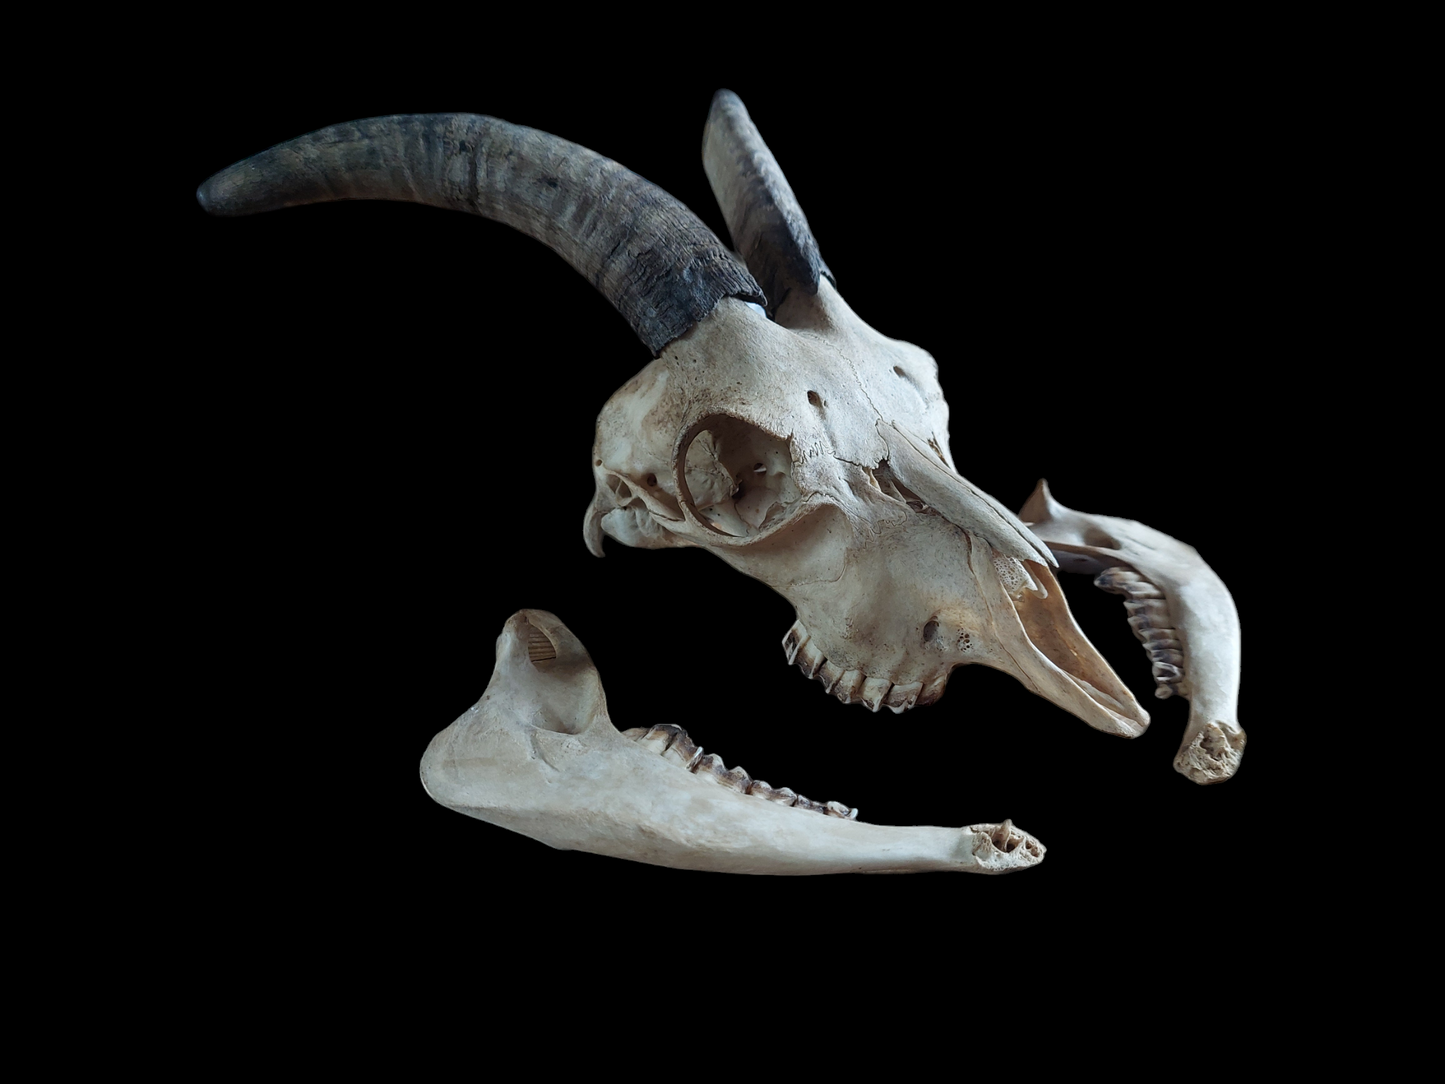 Goat skull #2